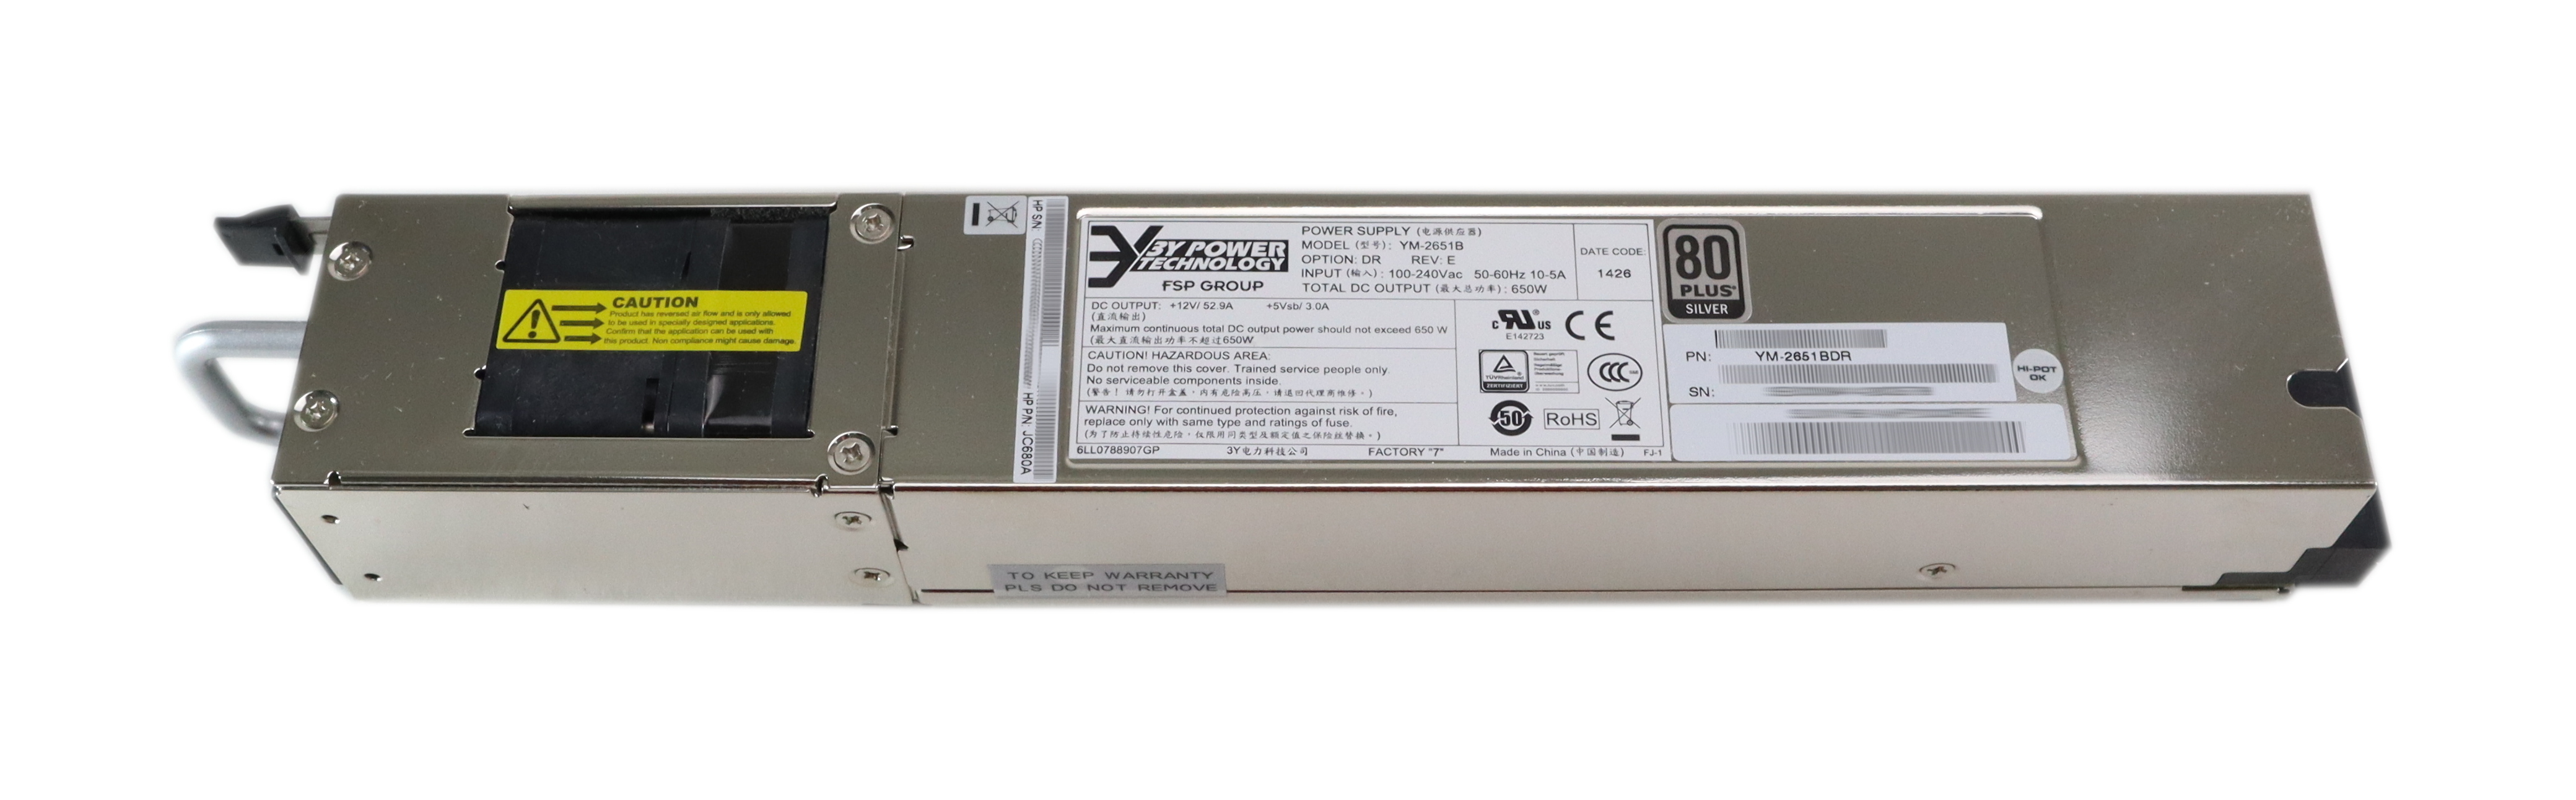 HP AC Power Supply PSU 80+ Silver YM-2651B 100-240V 10-5A 650W A58x0AF JC680A